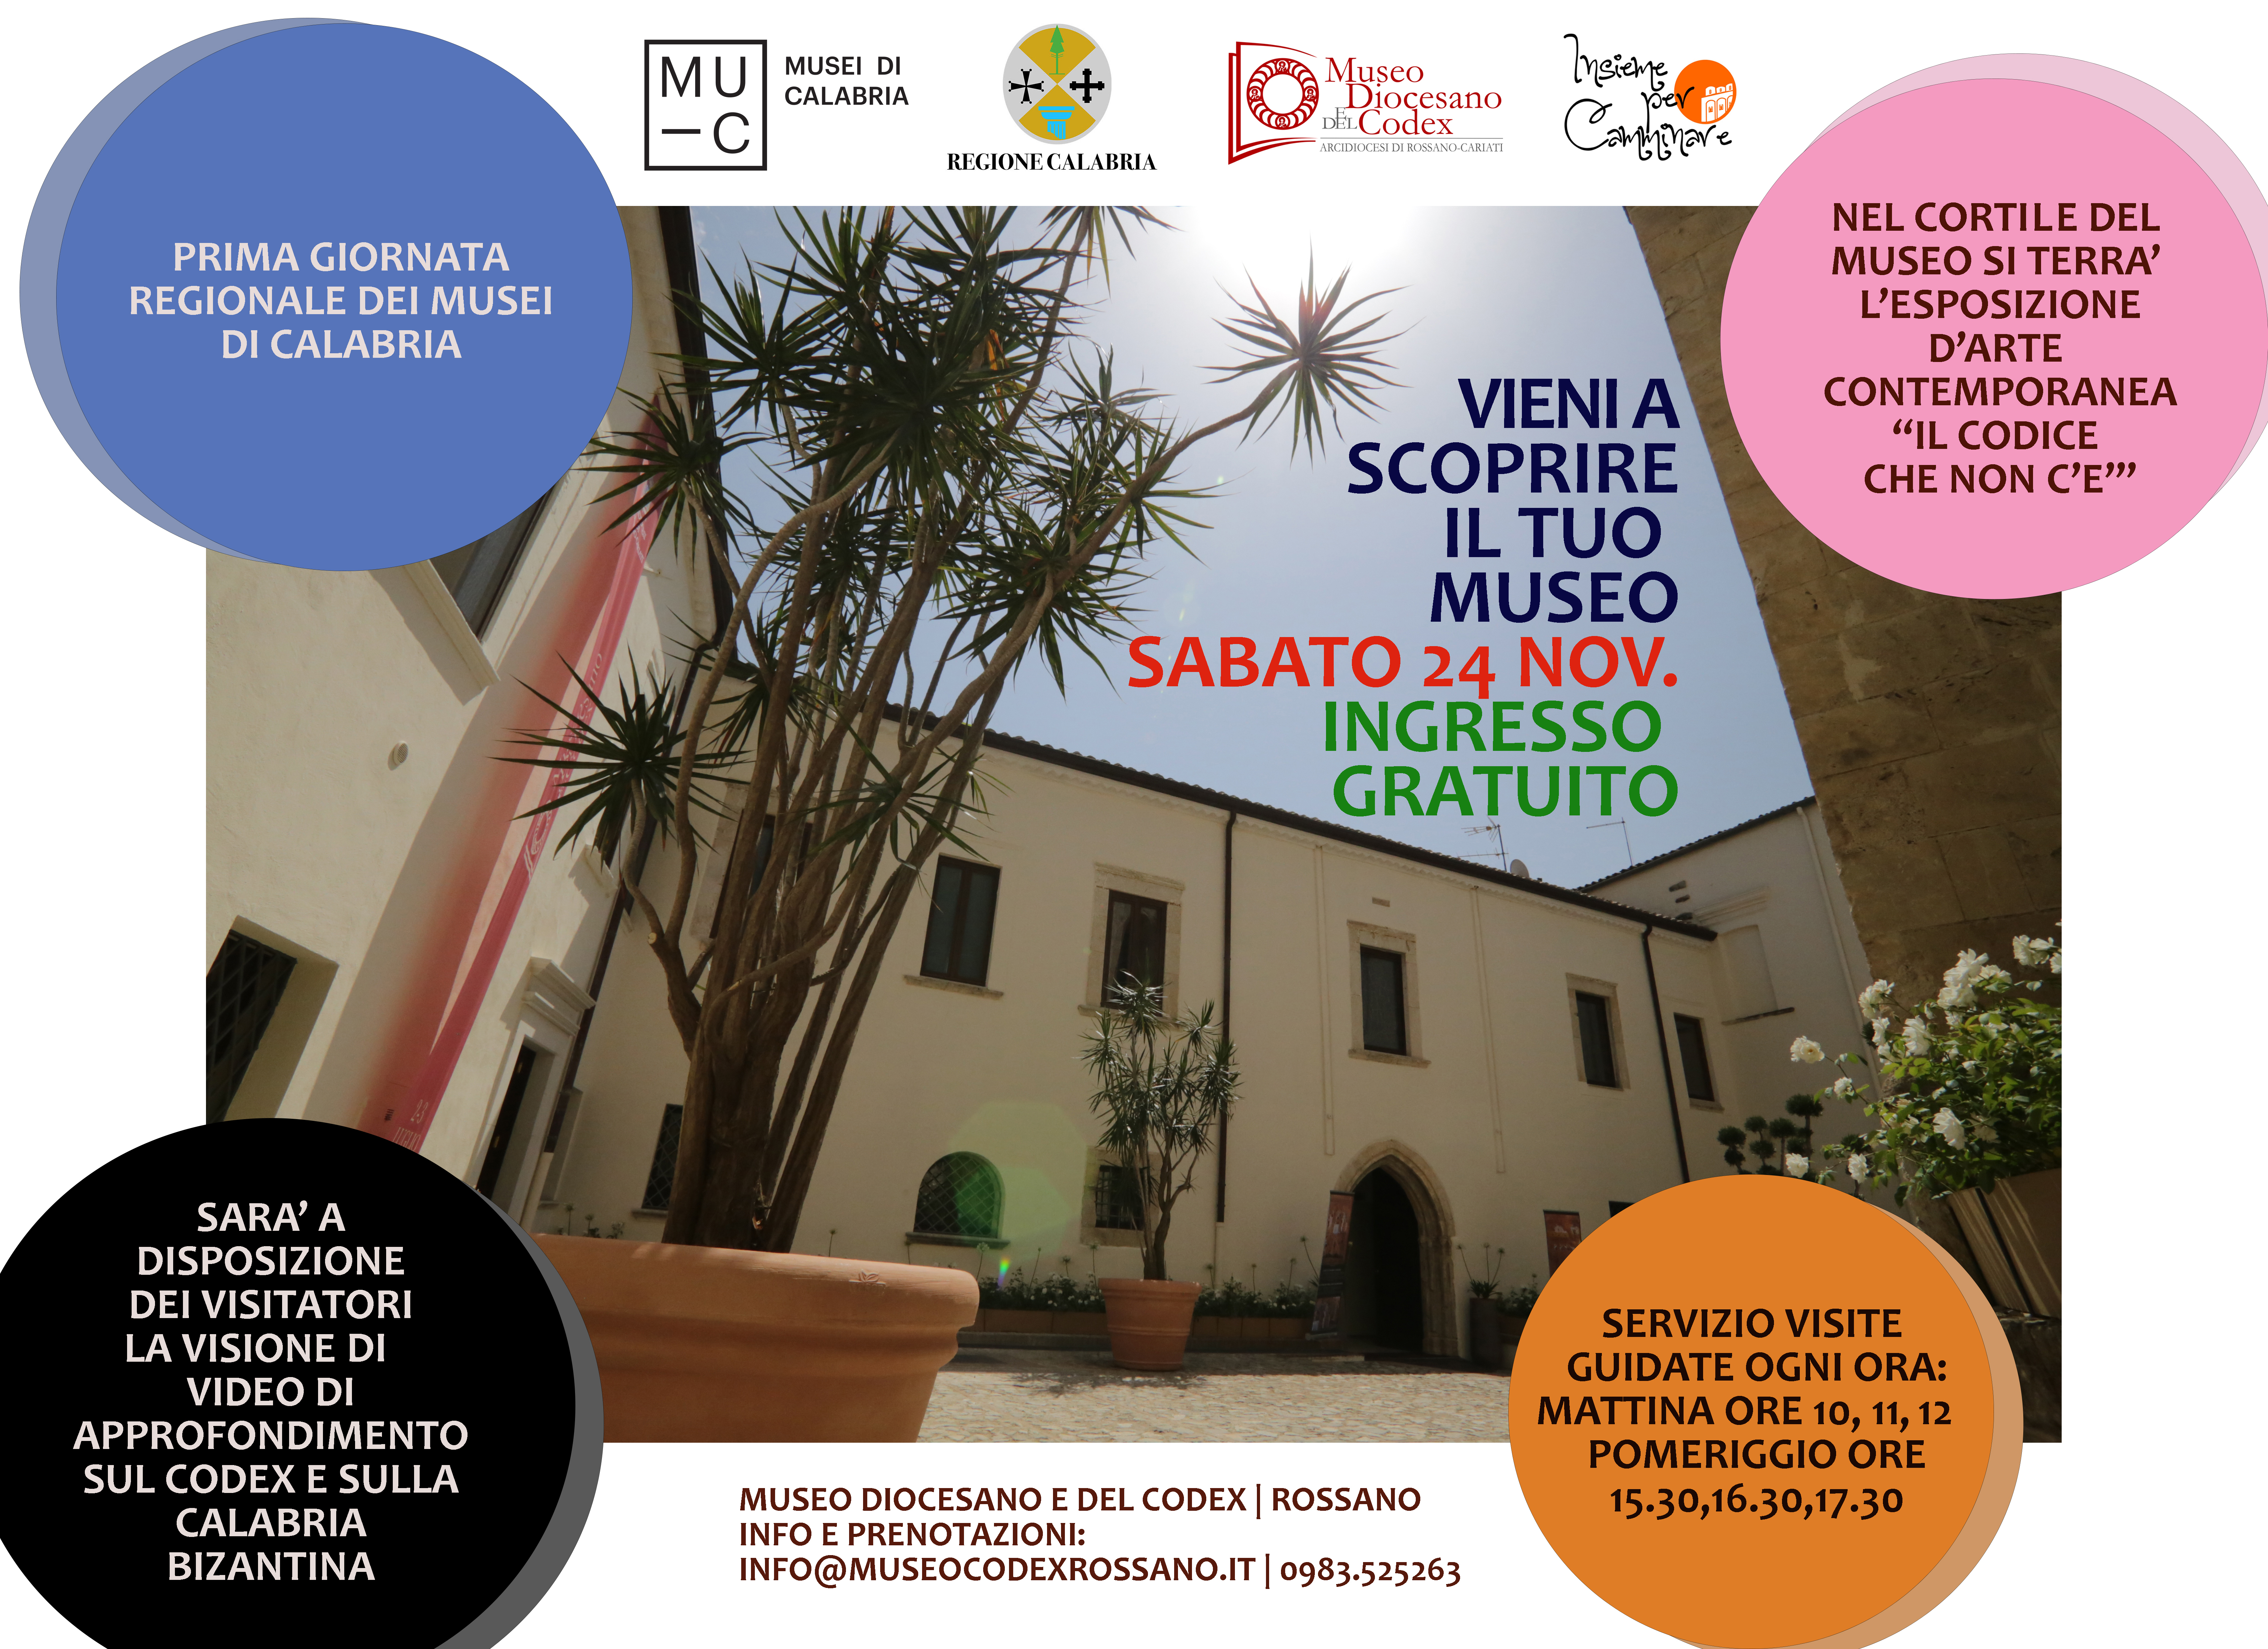 Giornata Regionale dei Musei di Calabria 24 Novembre 2018